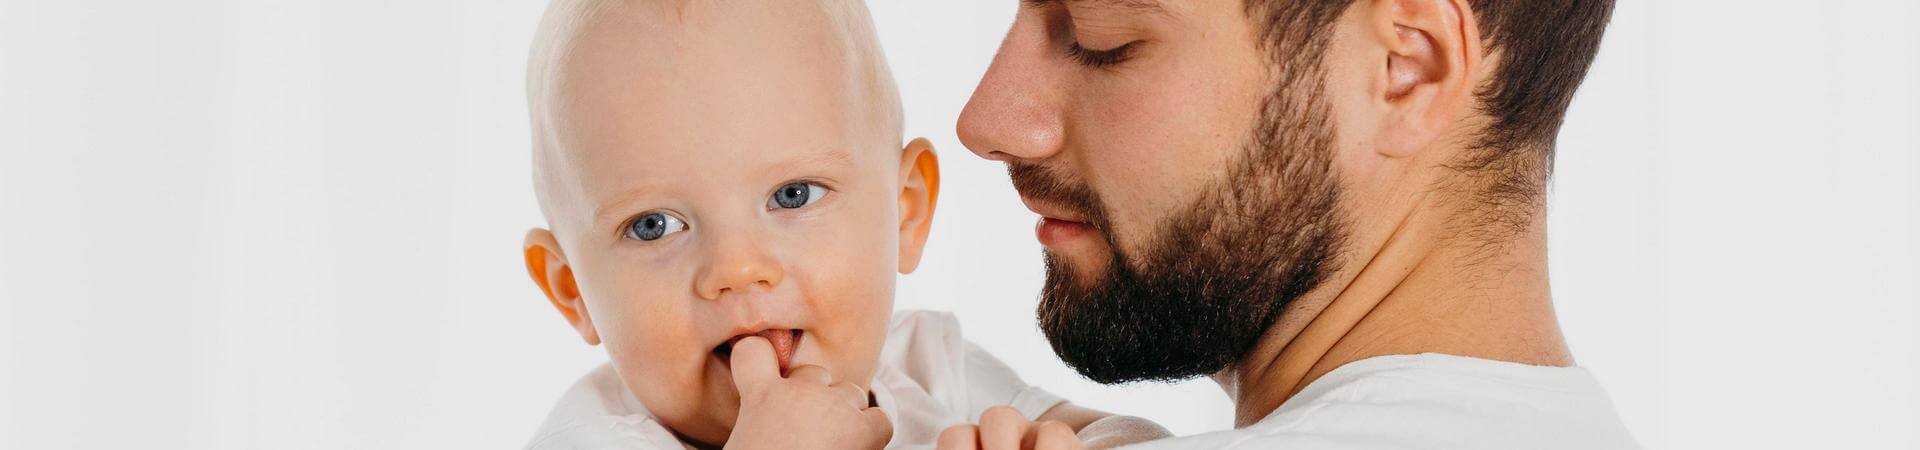 Спор о ребенке, полученном через суррогатное материнство